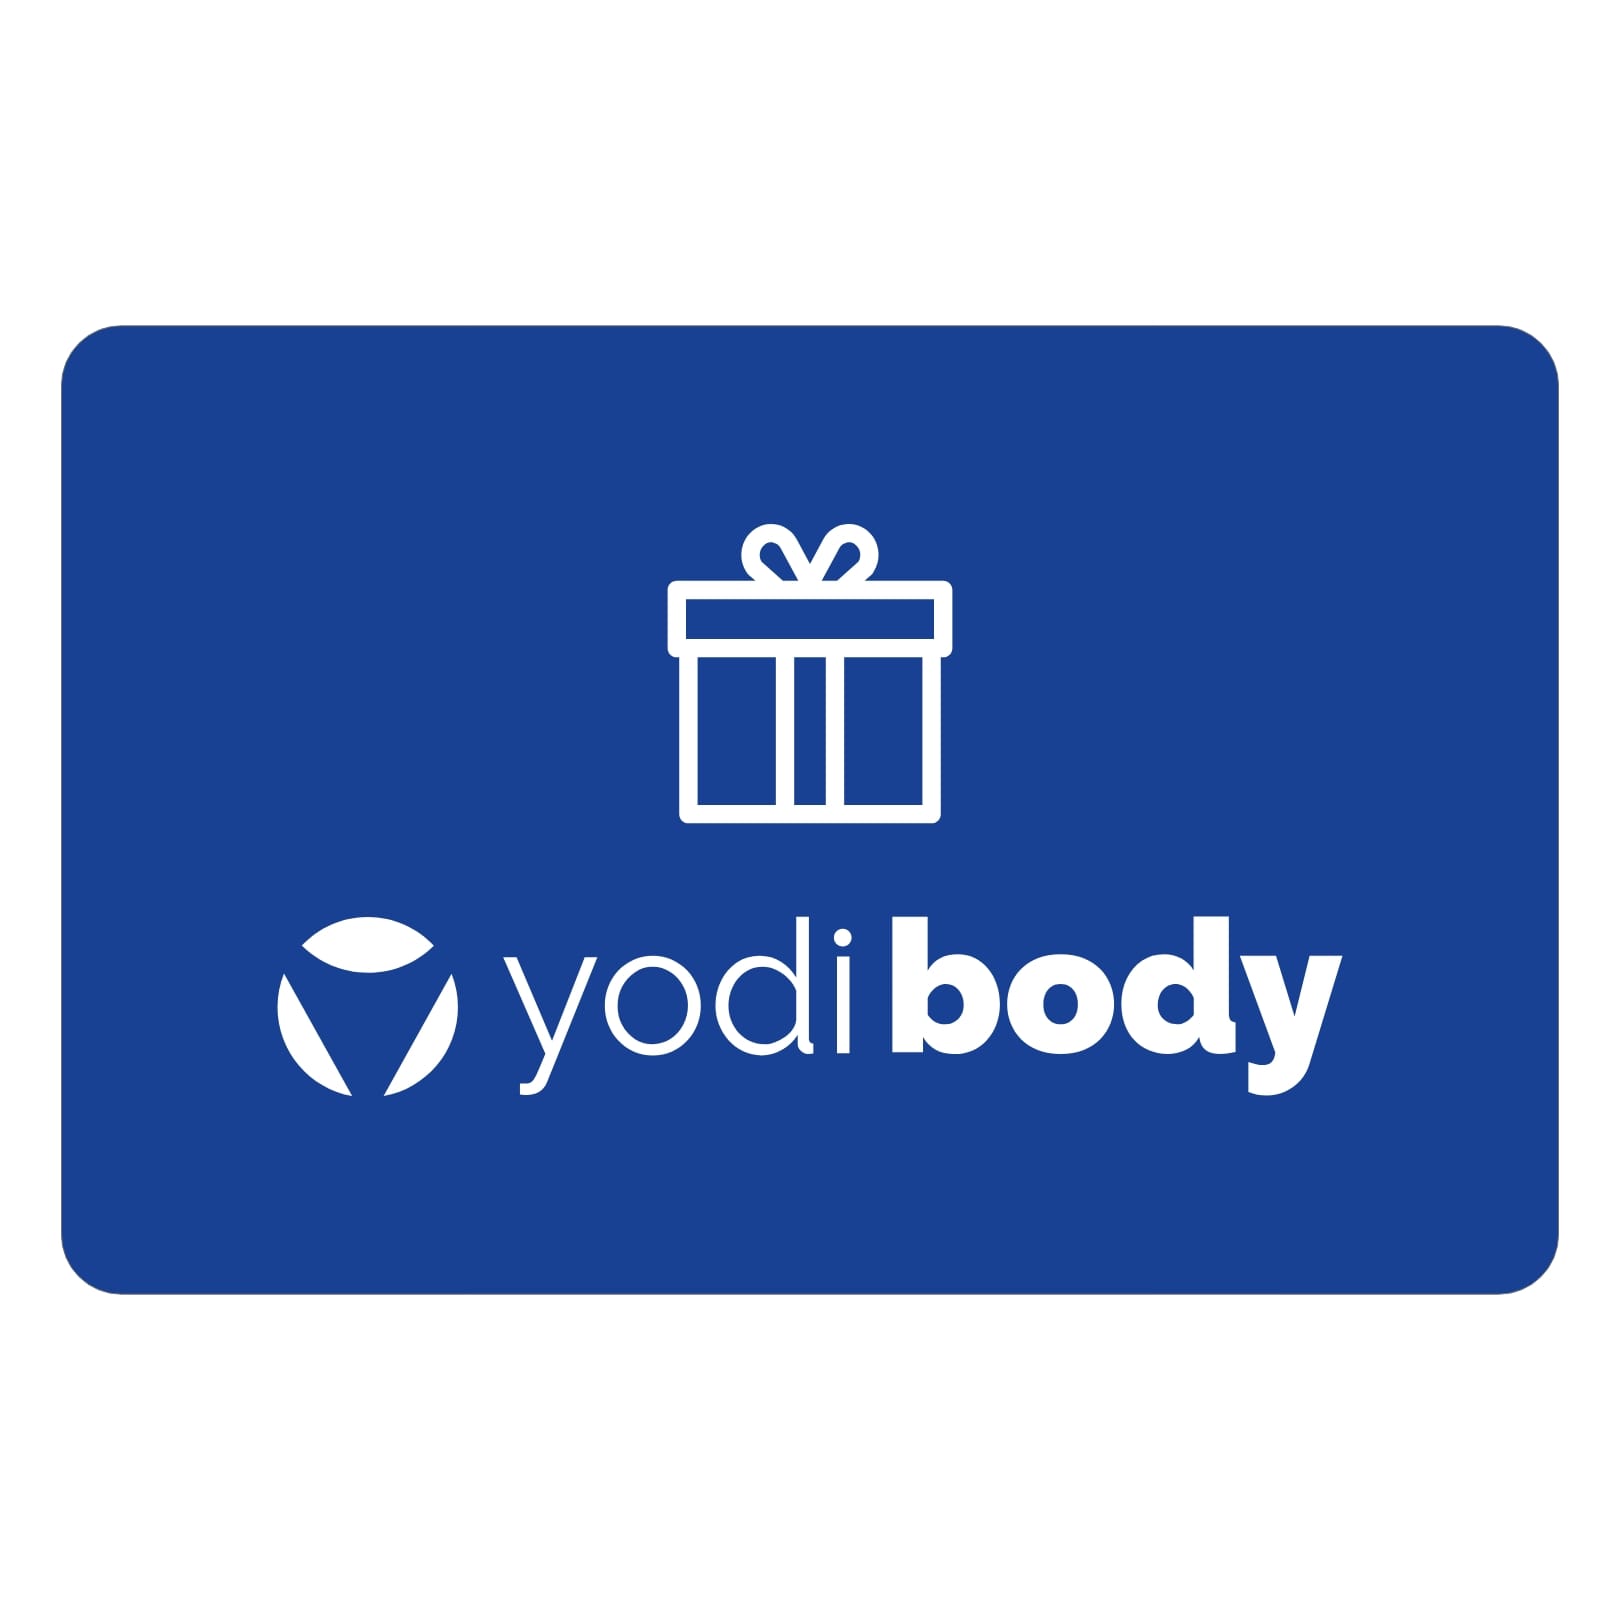 Yodi Body - Gift card